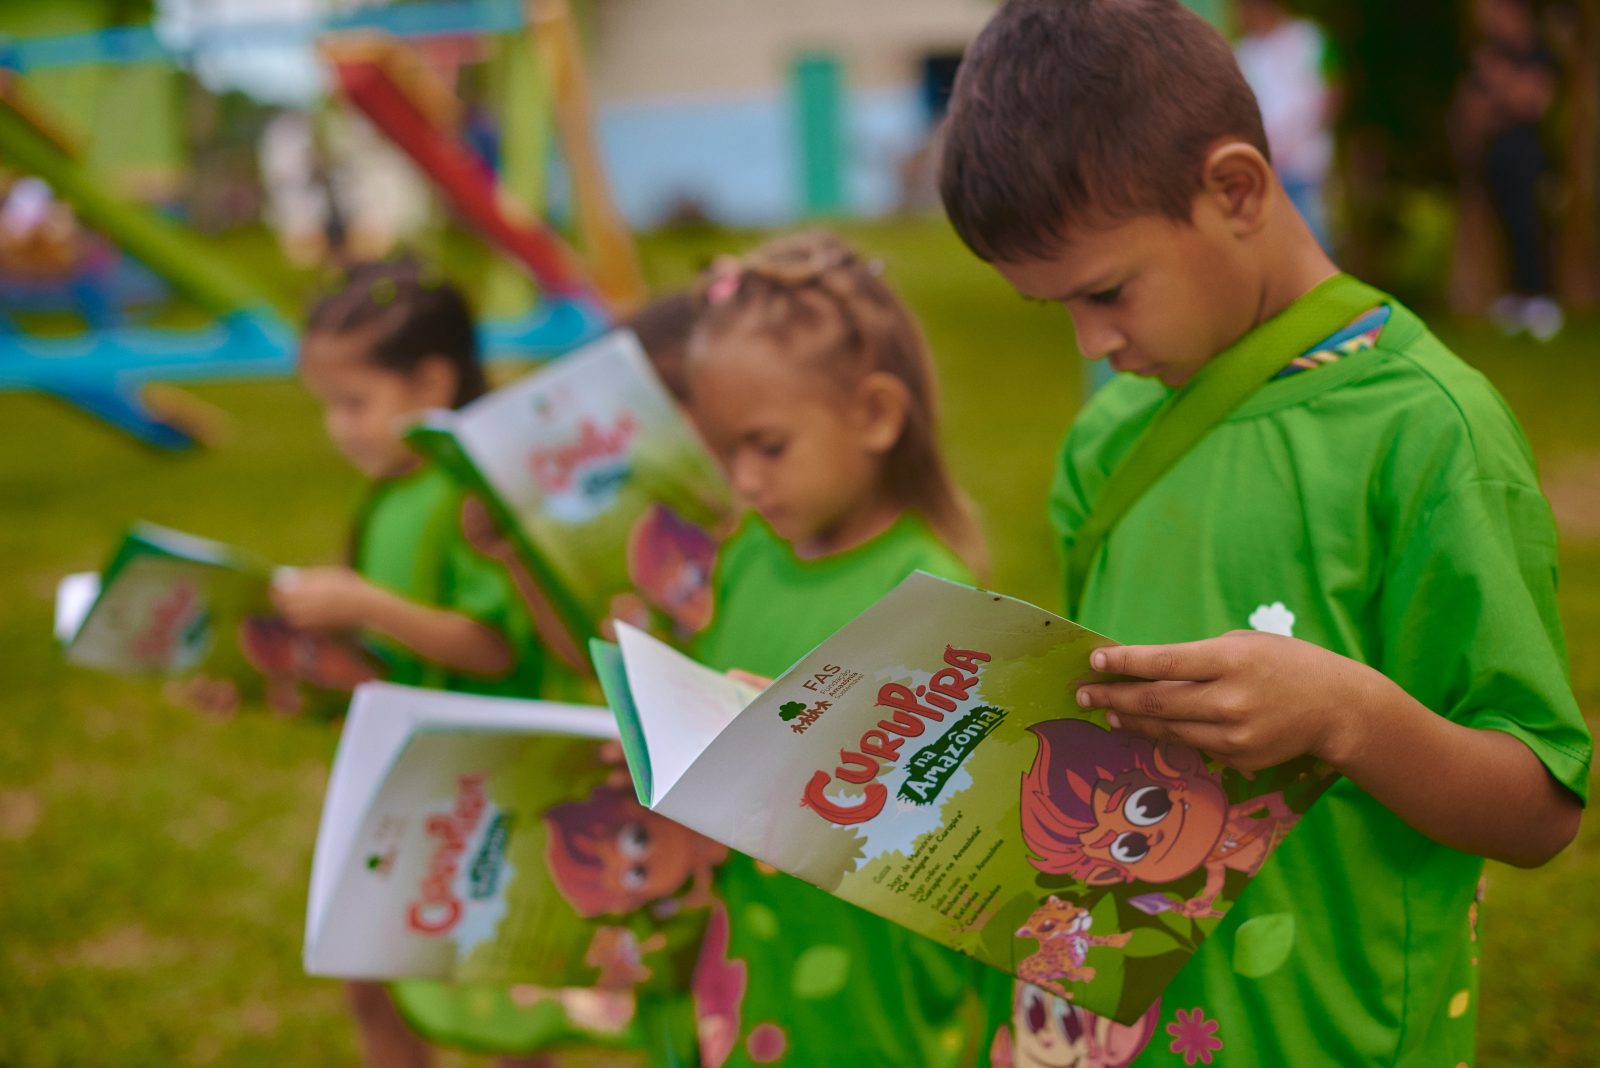 Crianças segurando livro criado pela Fundação Amazônia Sustentável (FAS) sobre educação.